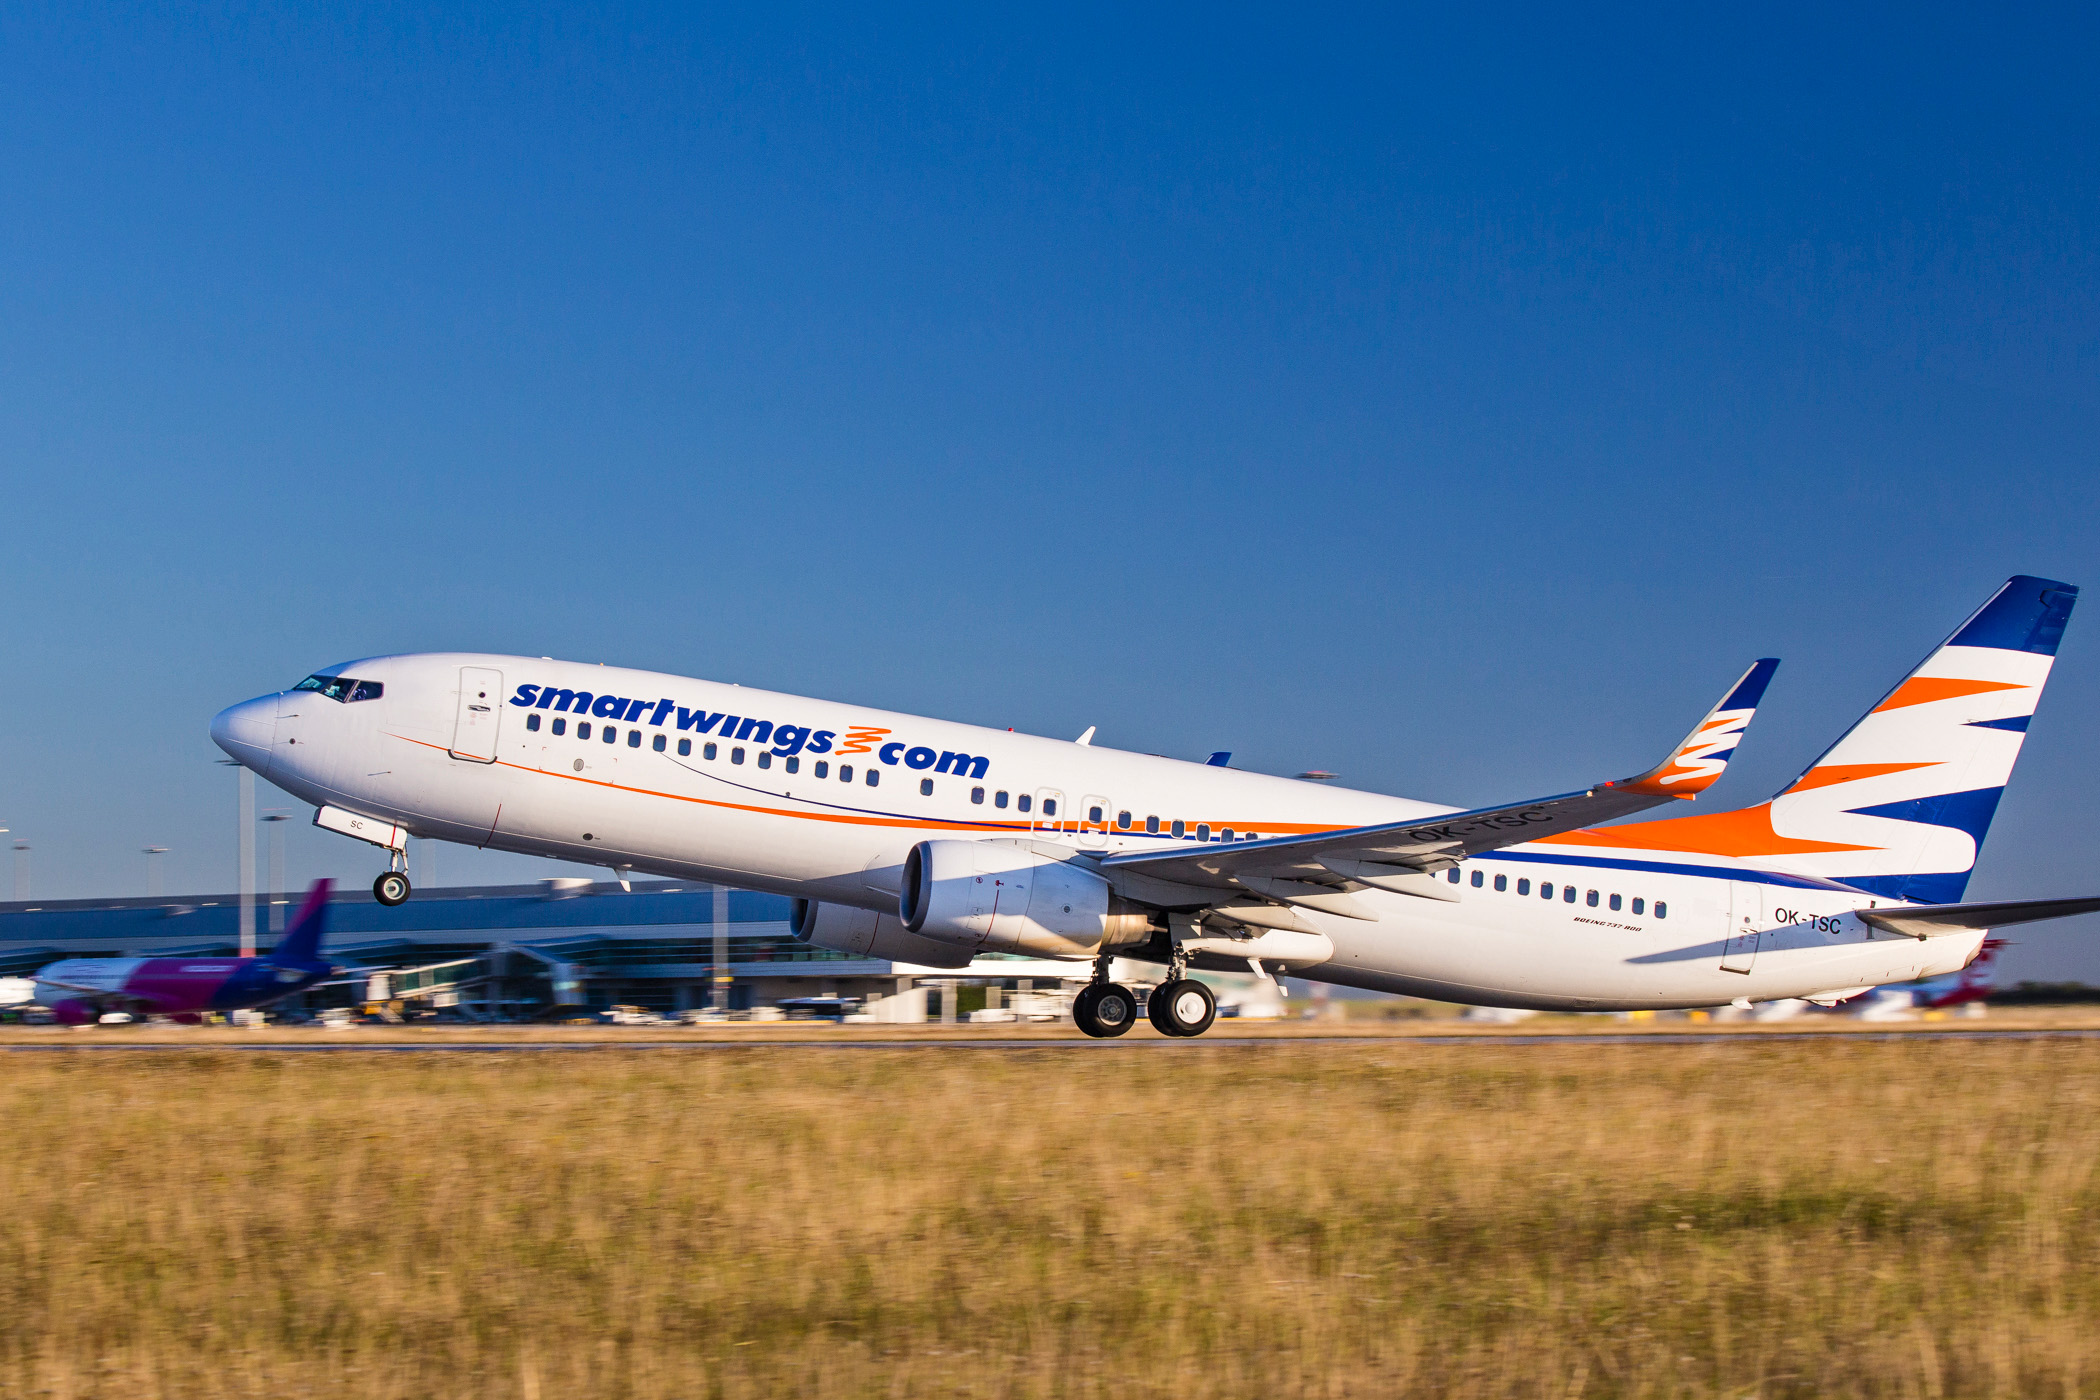 Boeing 737-800 společnosti Smartwings odlétá z Prahy. Foto: Letiště Praha